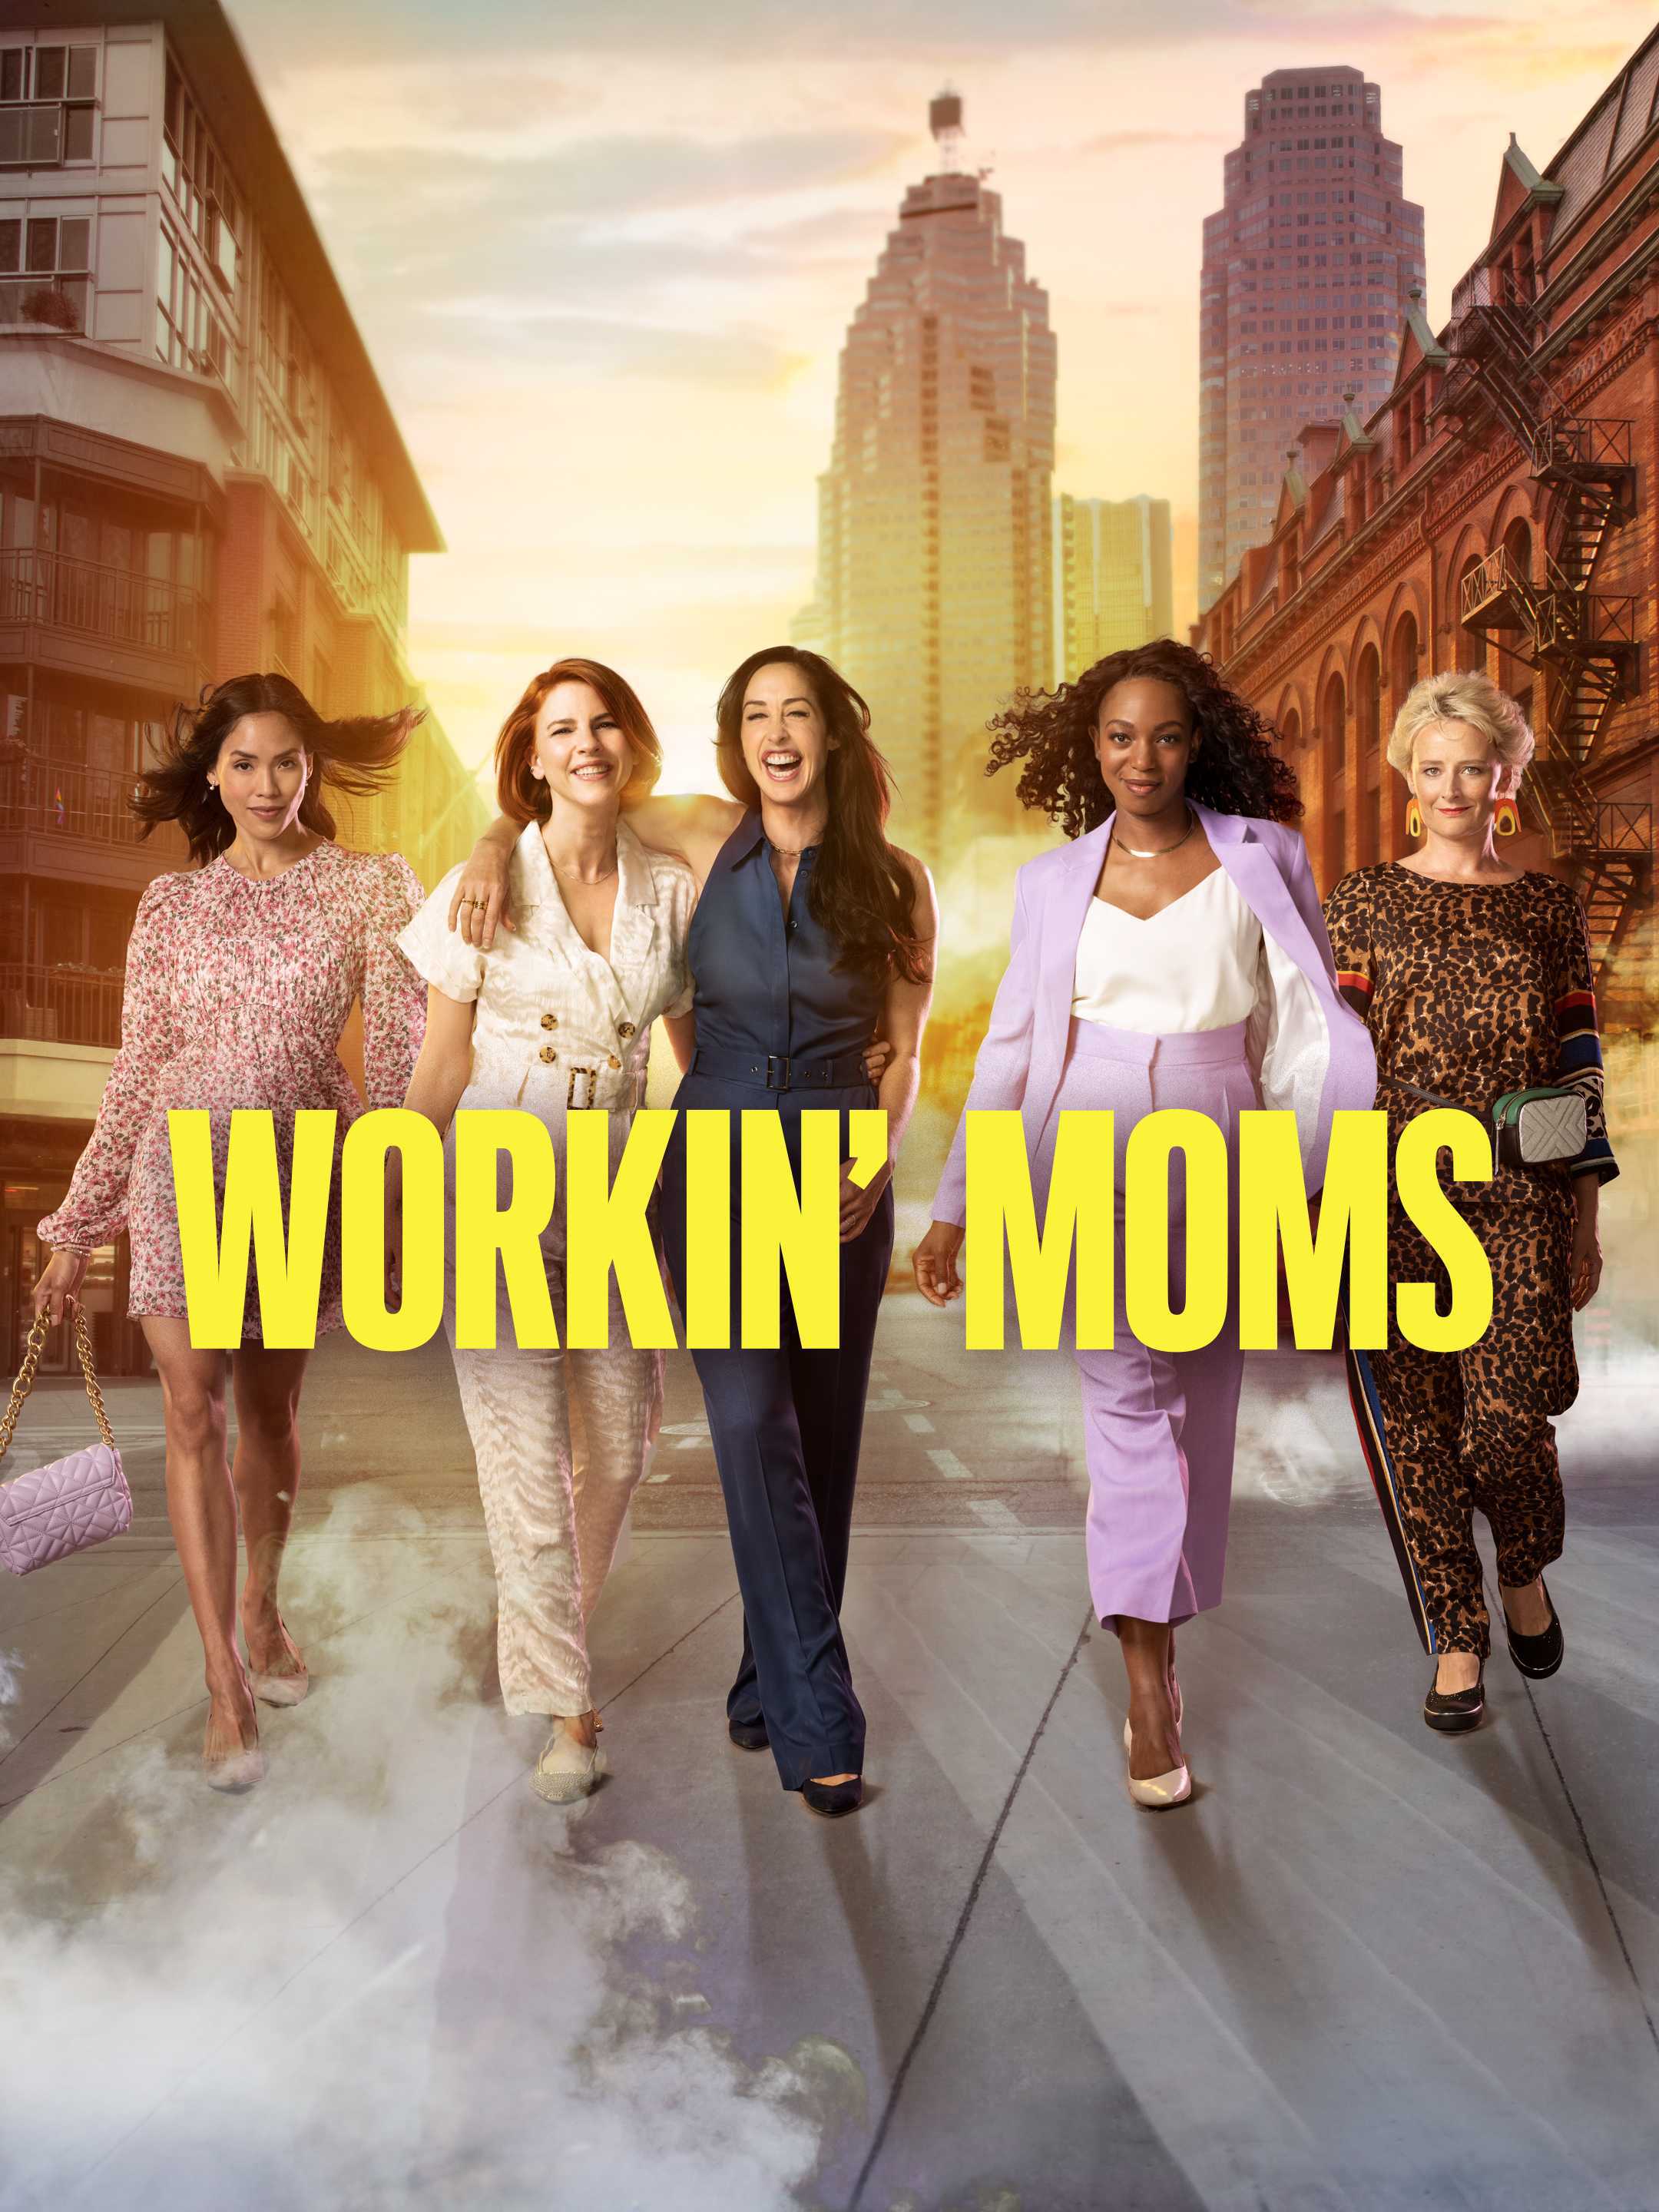 Những bà mẹ siêu nhân (phần 2) - Workin' moms (season 2)